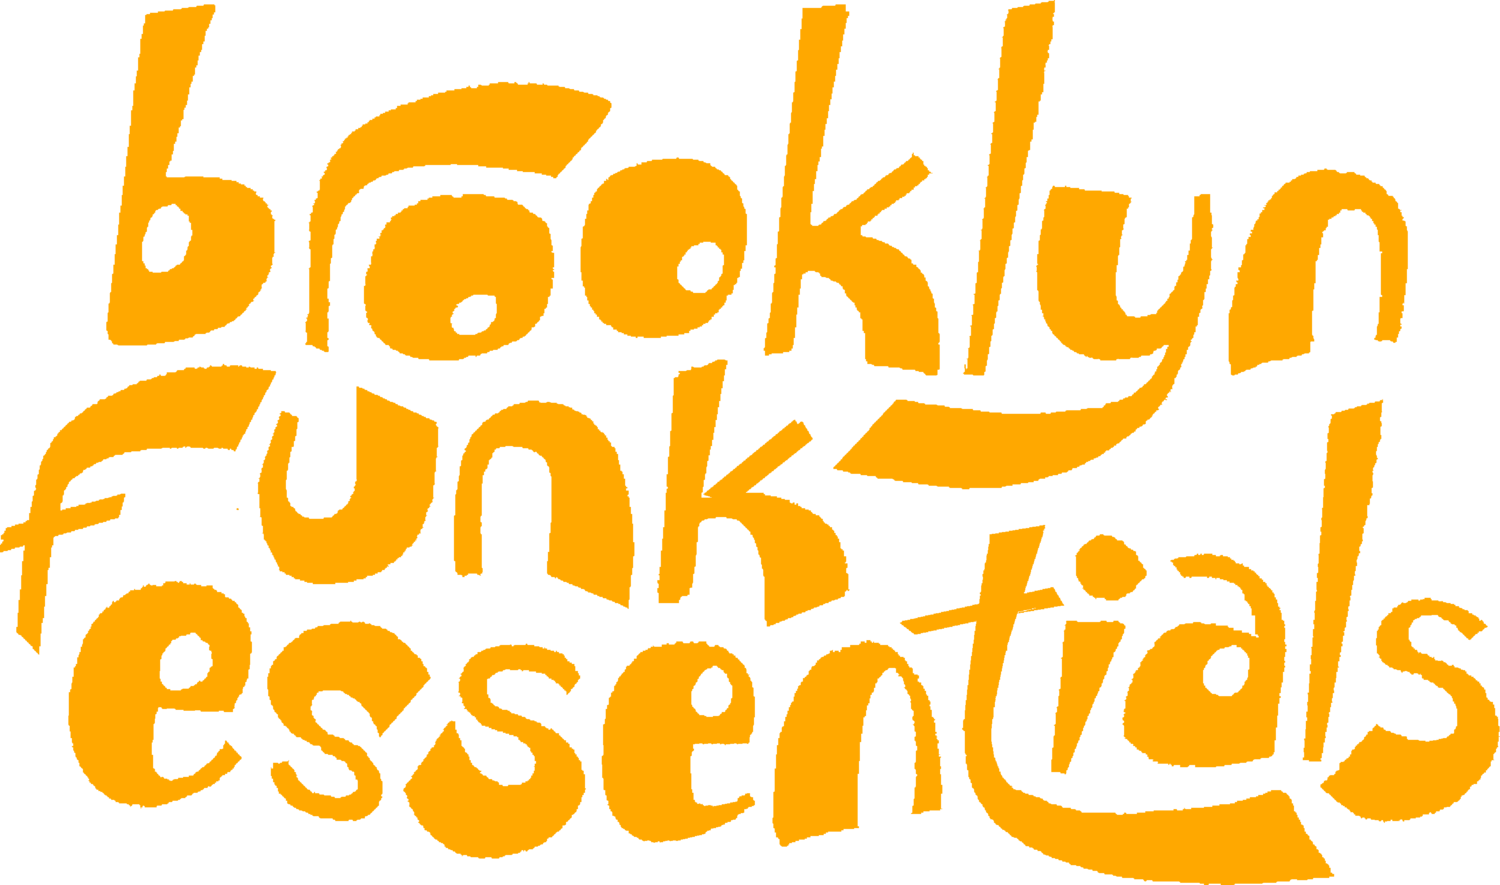 Résultat de recherche d'images pour "brooklyn funk essentials"